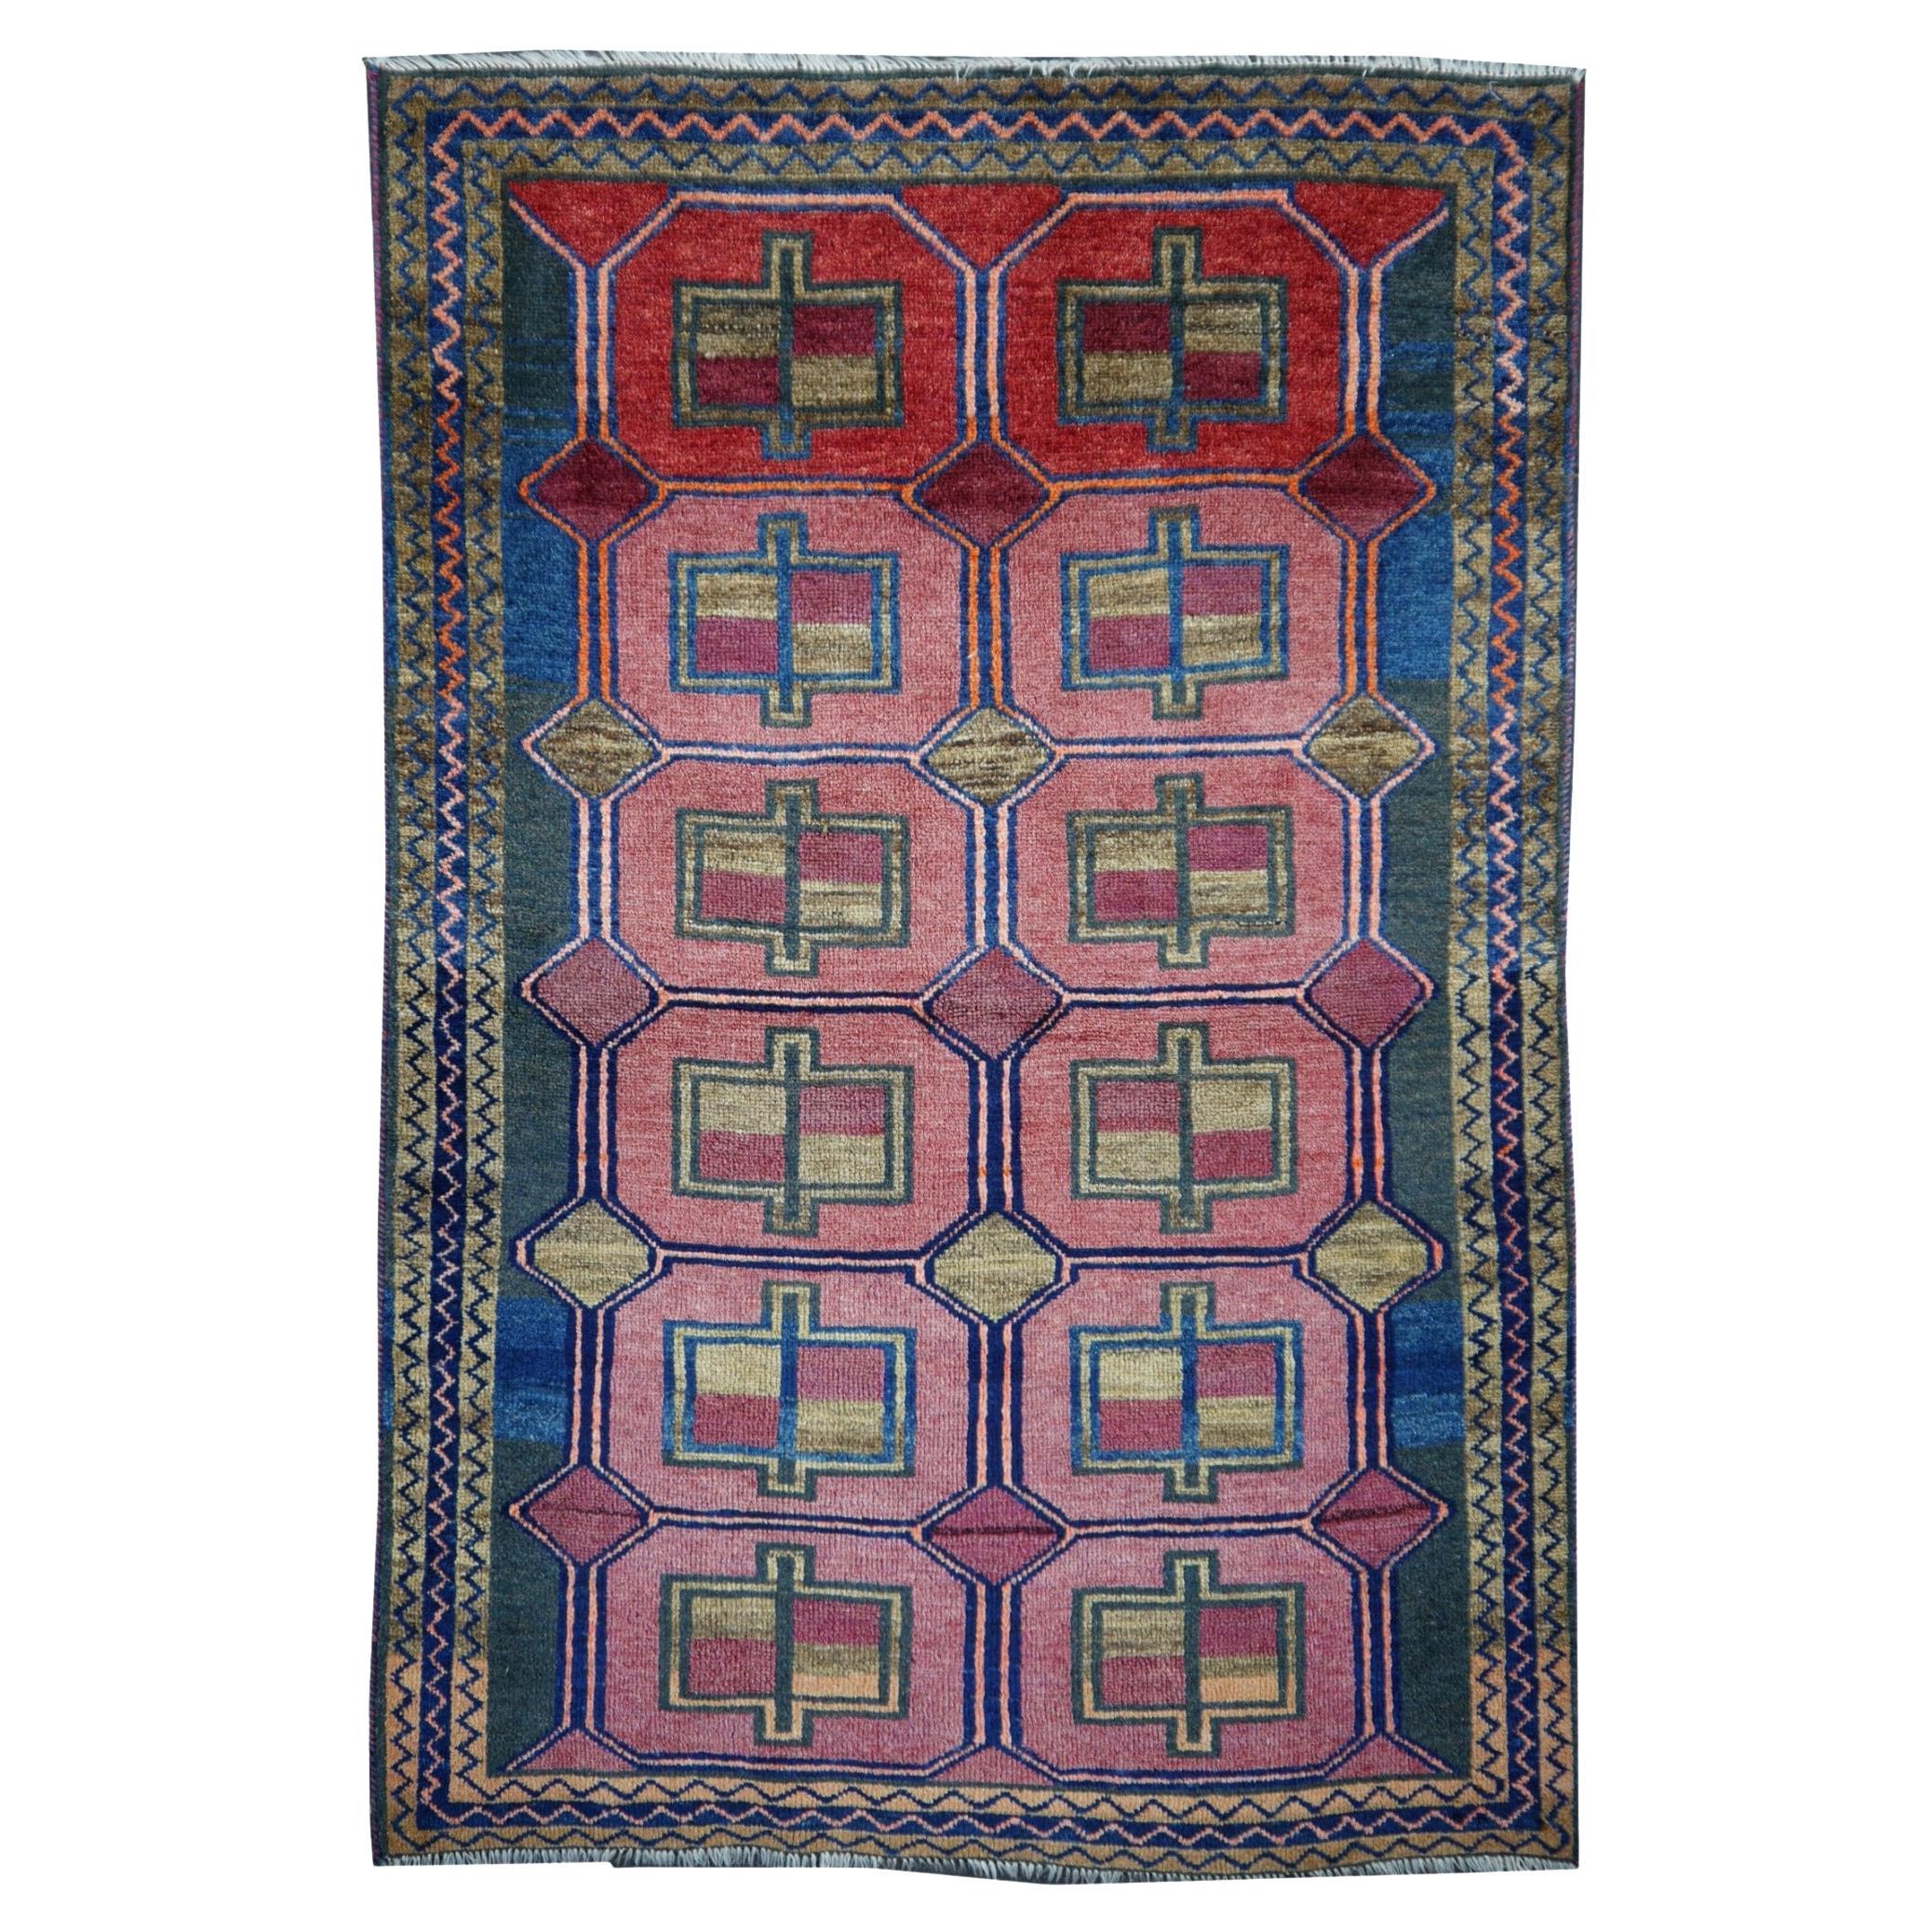 Handgeknüpfter türkischer Teppich Kurdischer Stammeskunst-Teppich Blau, Violett, Rot, Grün